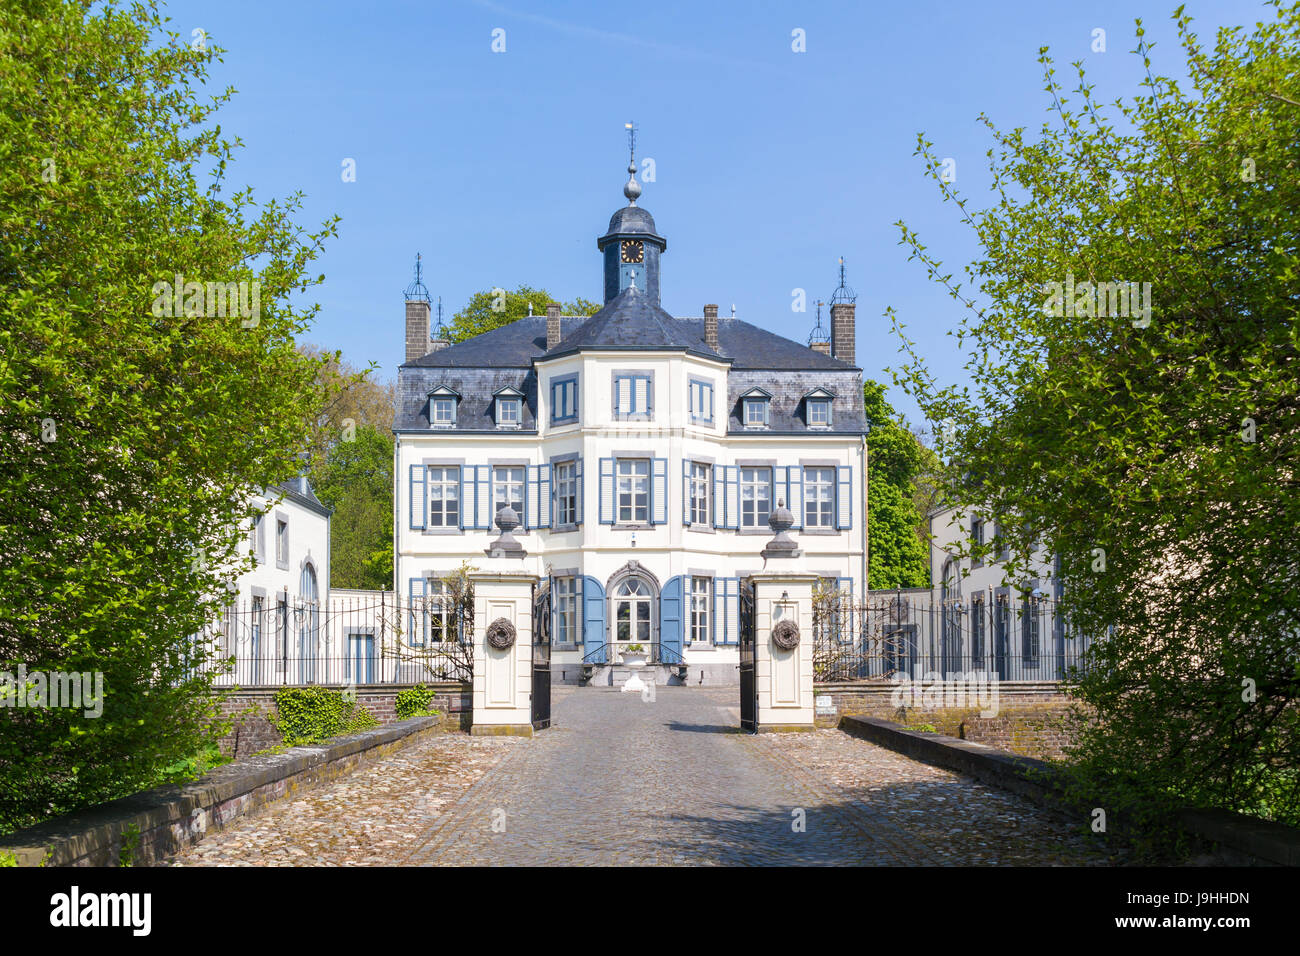 Front facade of Obbicht Castle in Sittard-Geleen, Limburg, Netherlands Stock Photo